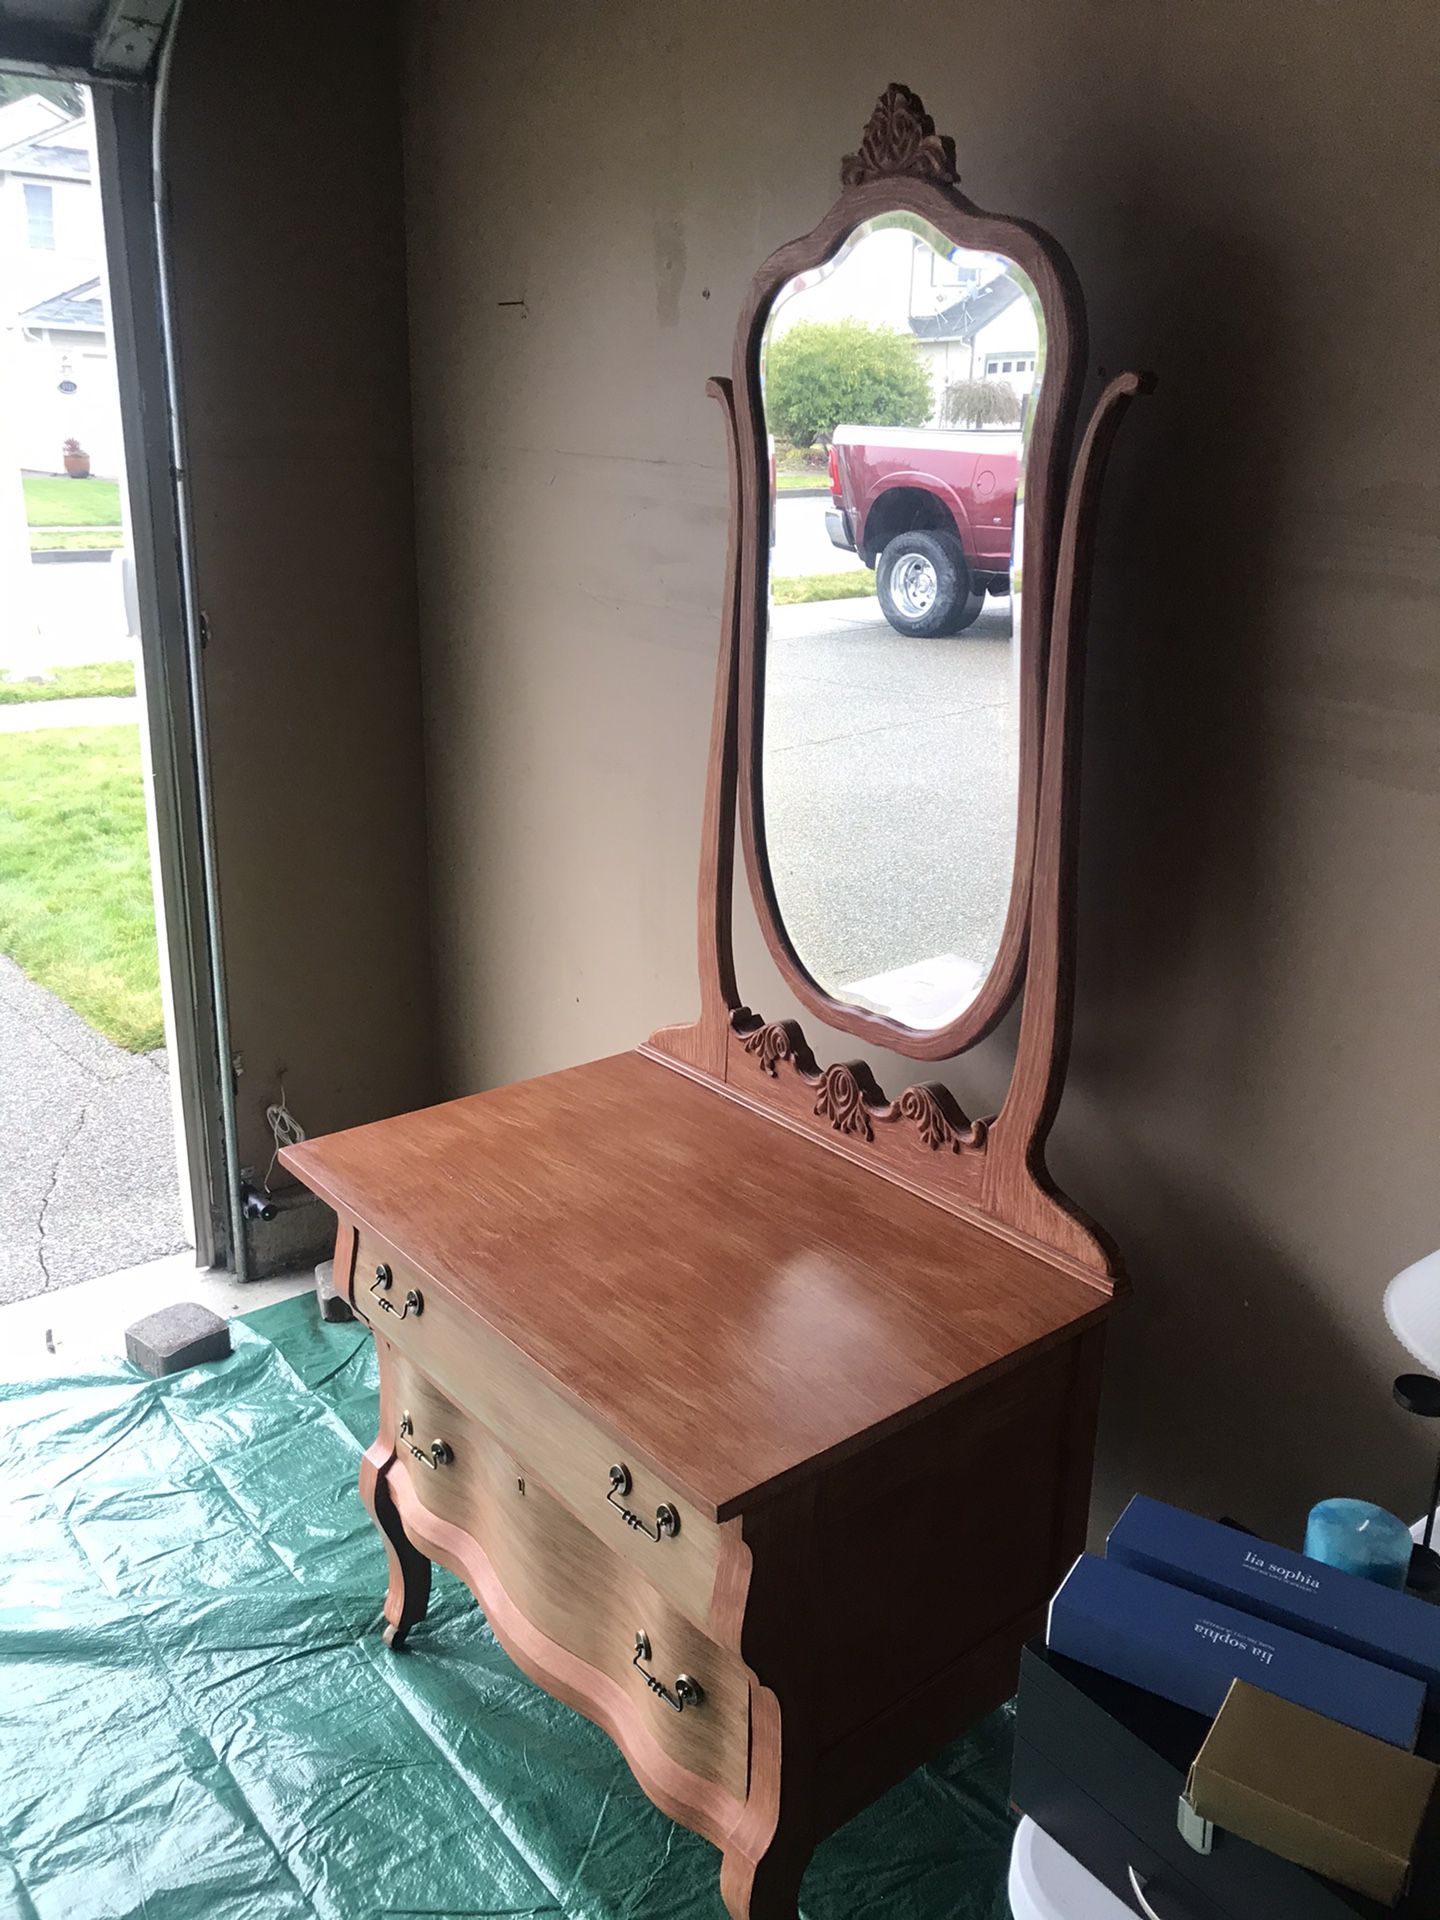 Antique dresser with mirror.